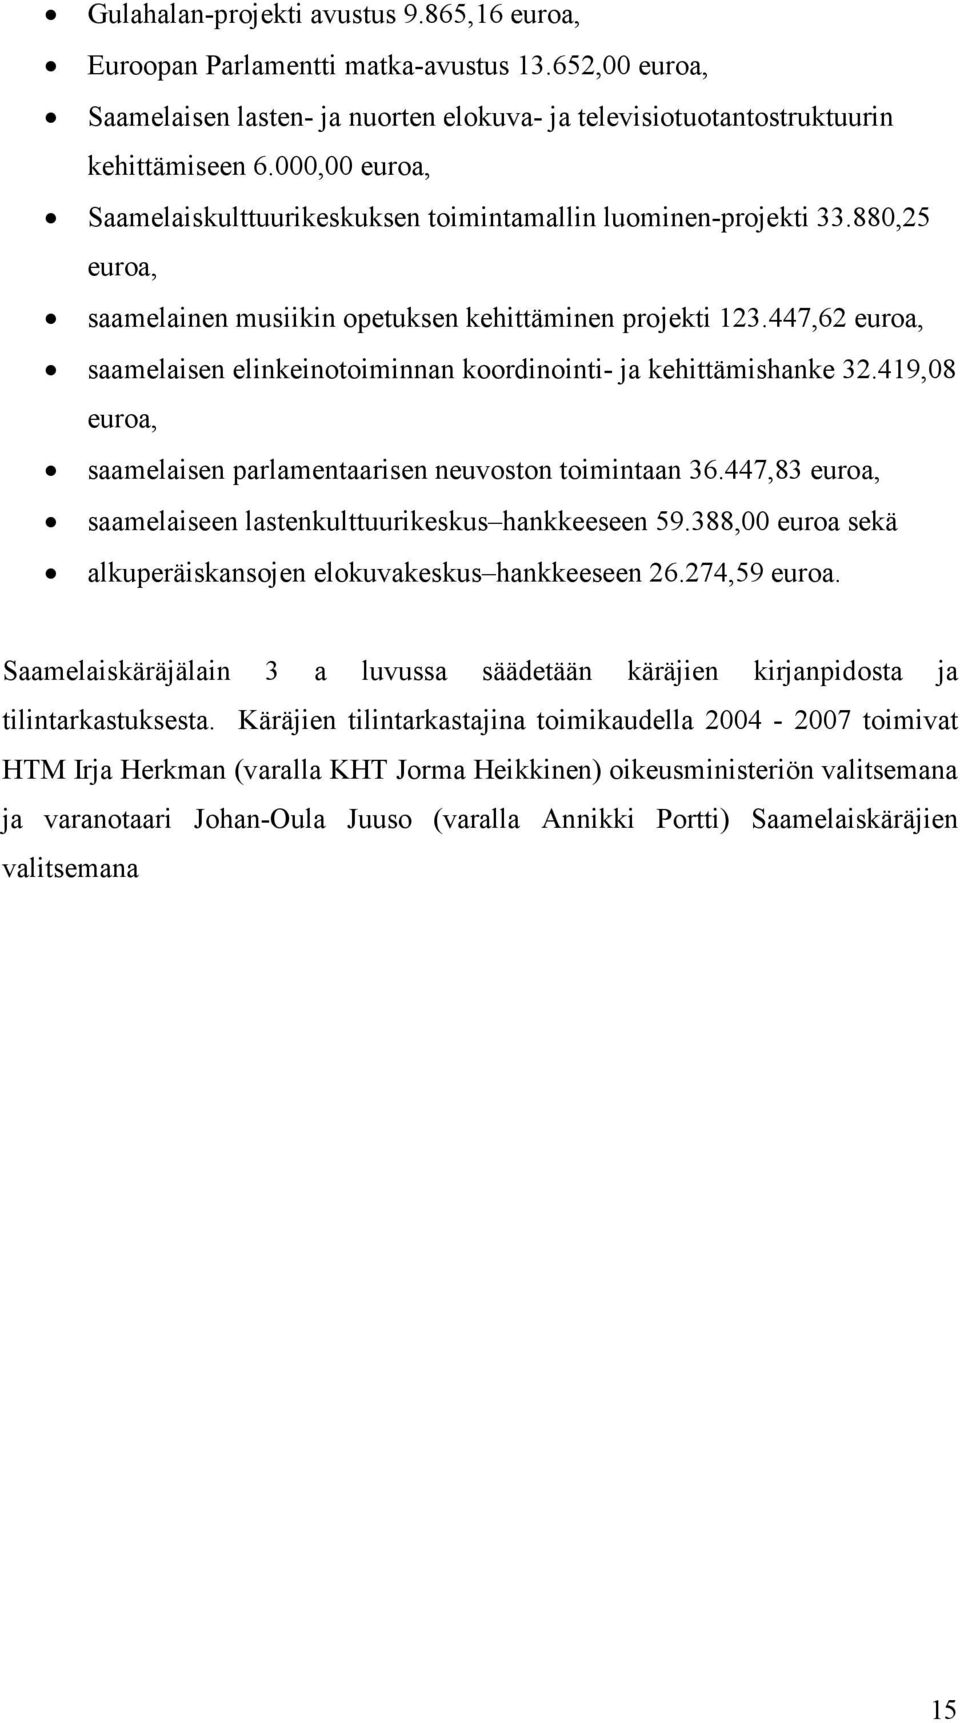 447,62 euroa, saamelaisen elinkeinotoiminnan koordinointi- ja kehittämishanke 32.419,08 euroa, saamelaisen parlamentaarisen neuvoston toimintaan 36.